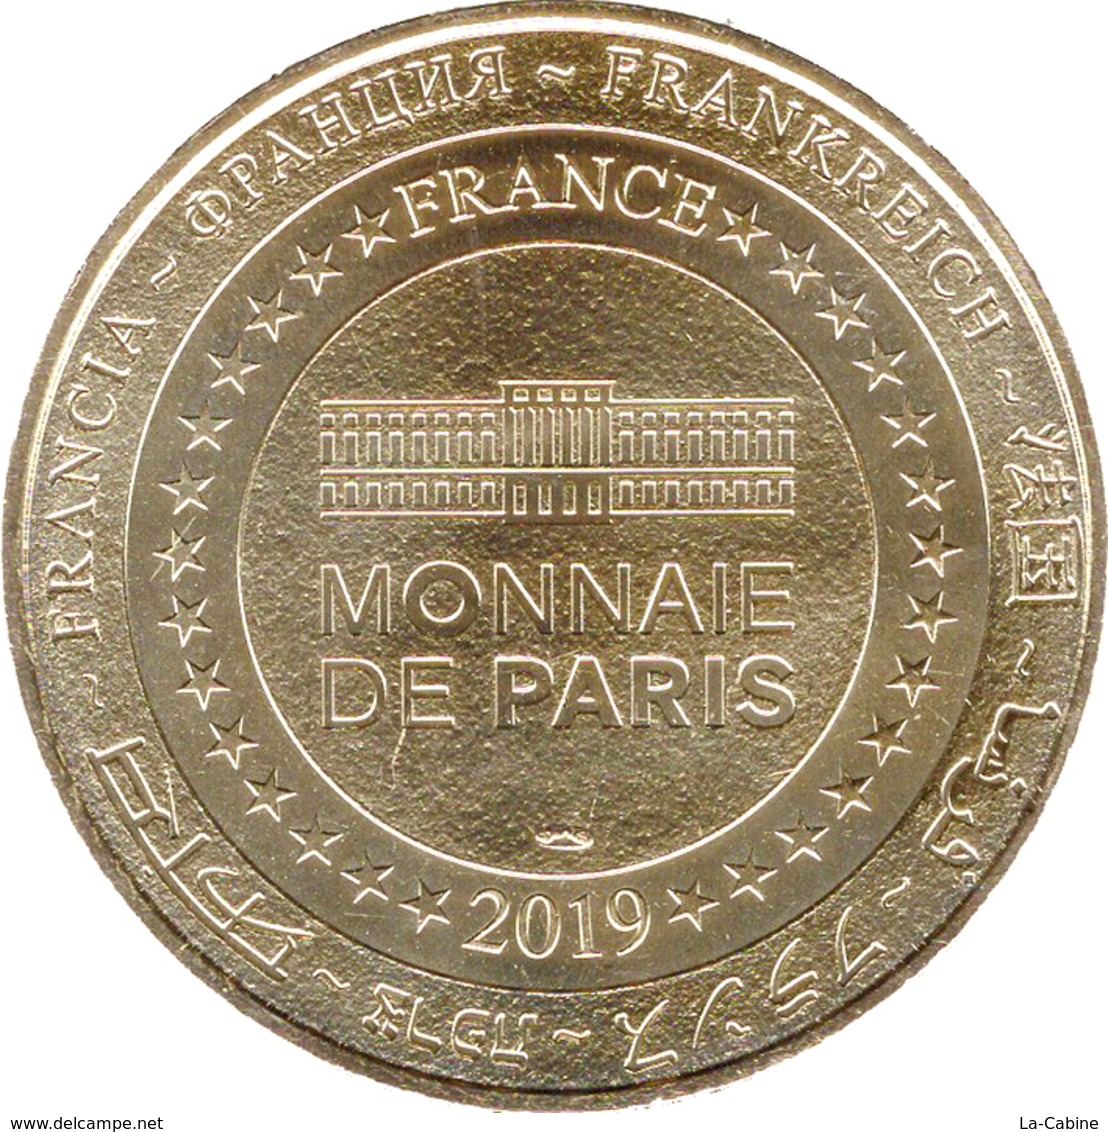 77 MEAUX CITÉ ÉPISCOPALE MÉDAILLES MONNAIE DE PARIS 2019 JETON TOKENS MEDALS COINS - 2019